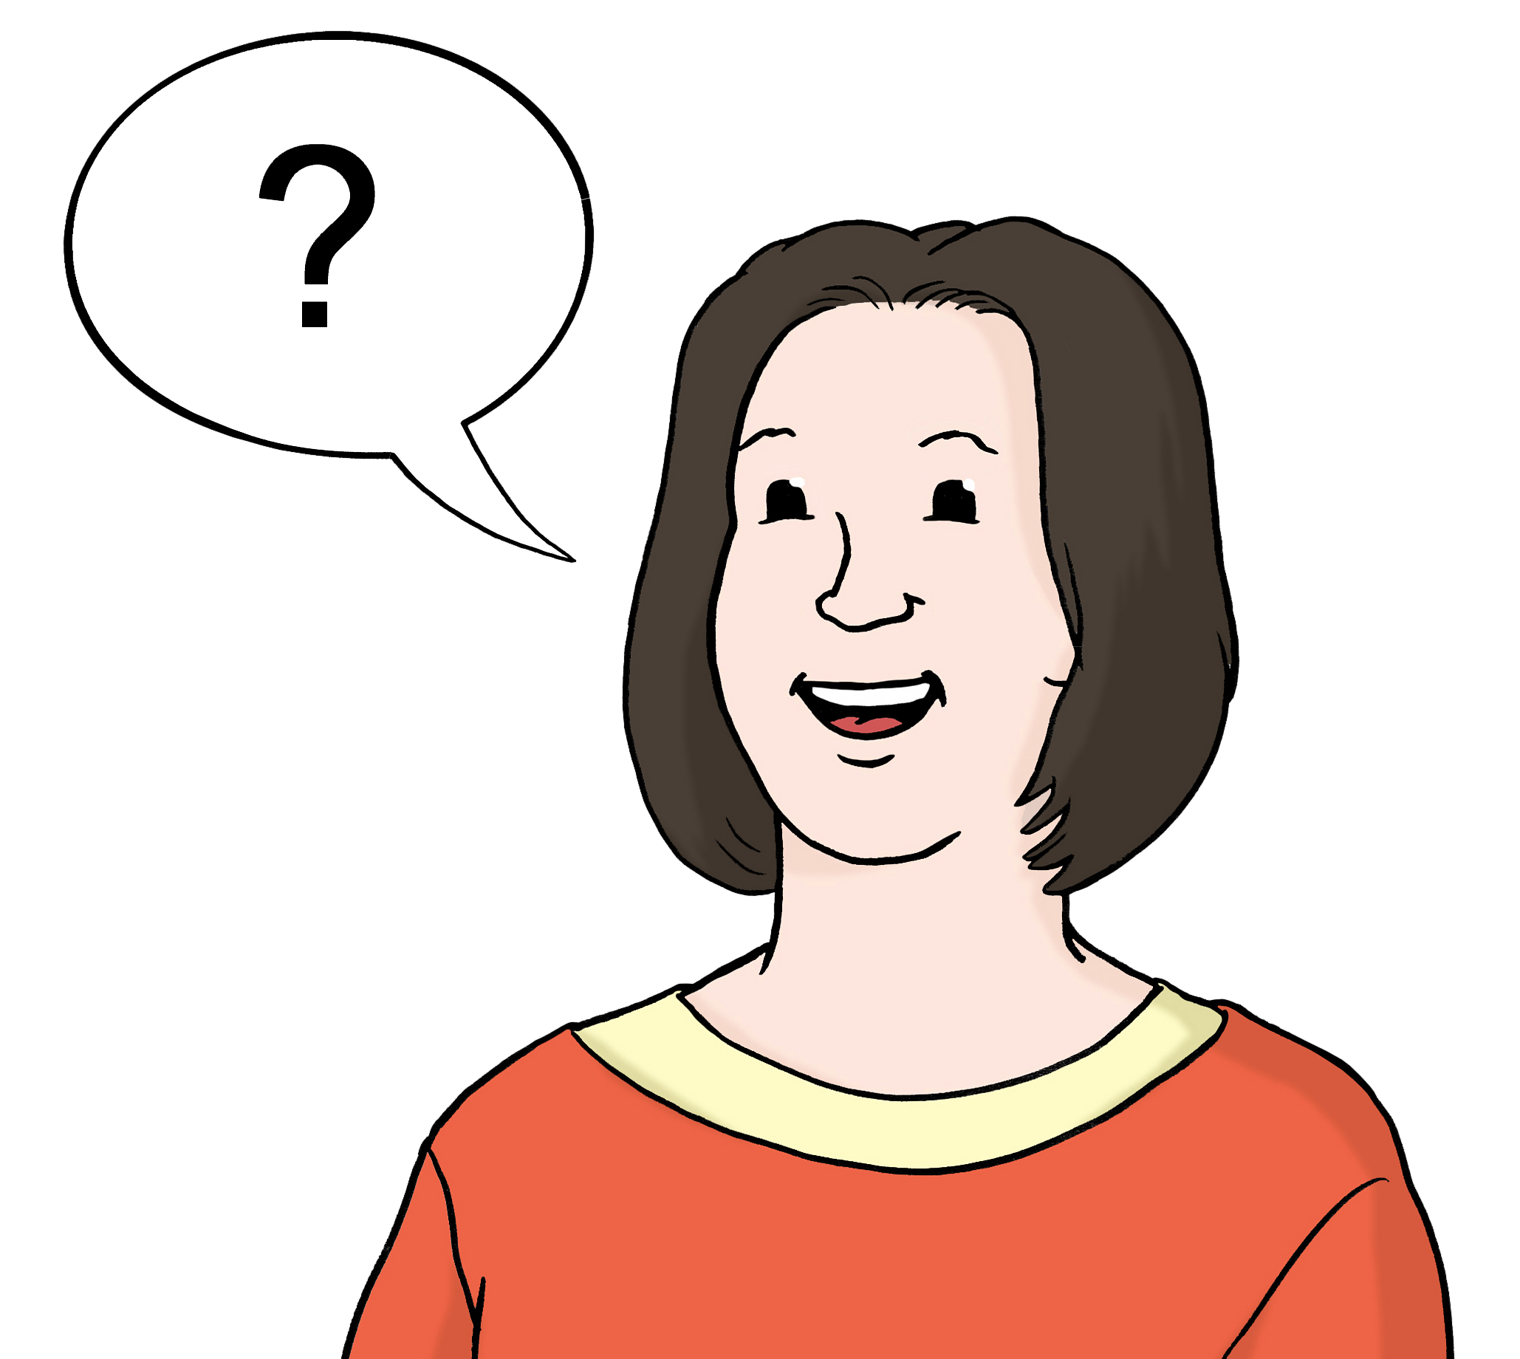 Frau mit kinnlangen dunklen Haaren und lachendem Gesicht stellt eine Frage, wie das Fragezeichen in der Sprechblase neben ihr zeigt